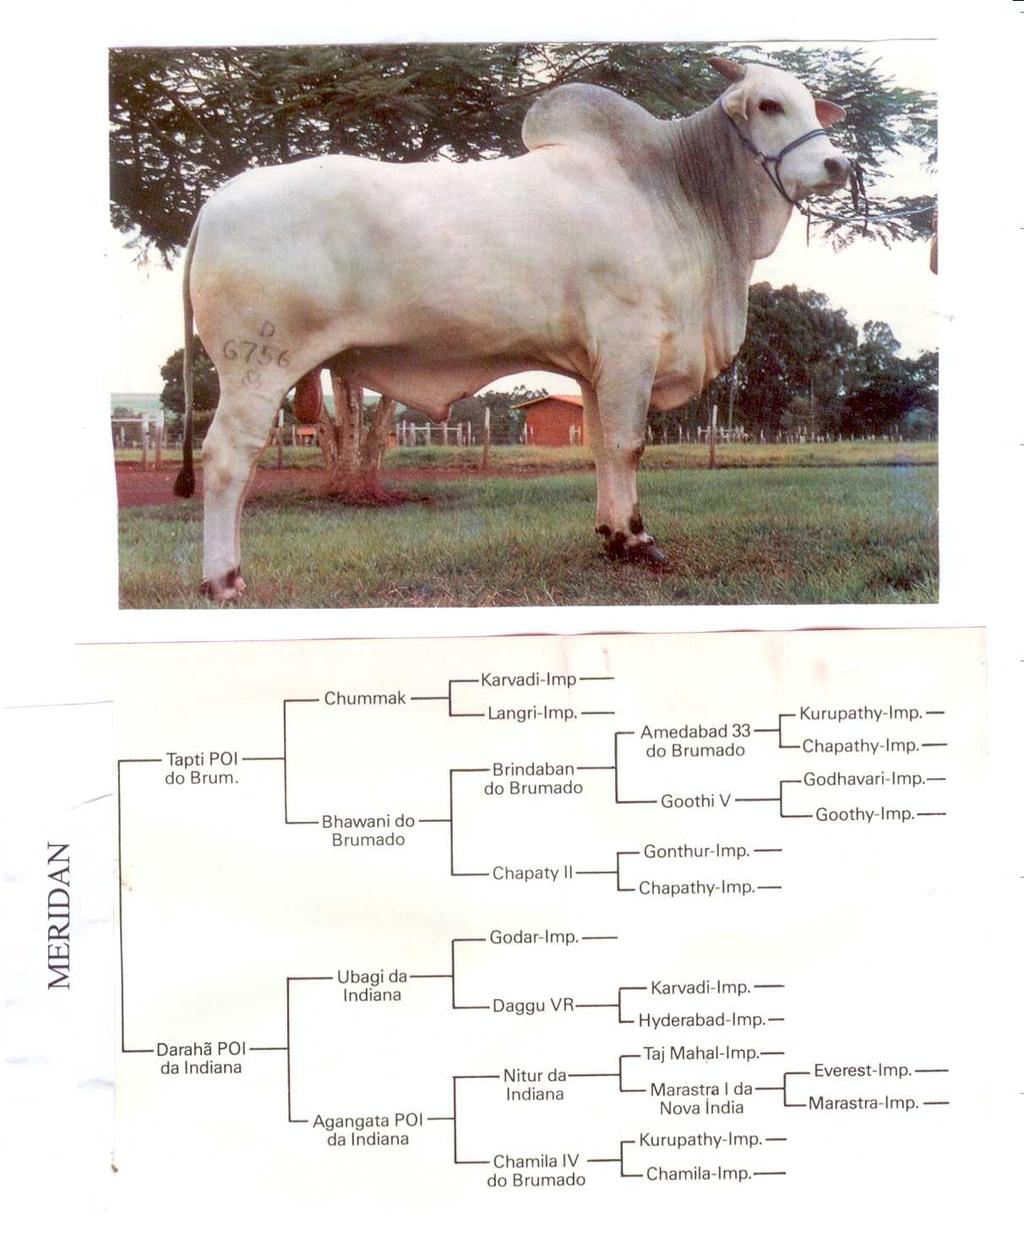 6. Considerando o pedigree abaixo, pede-se: a) Calcular o coeficiente de endogamia do touro Meridan b) Montar a tabela de covariâncias genéticas para todos os animais do pedigree c) Qual é a